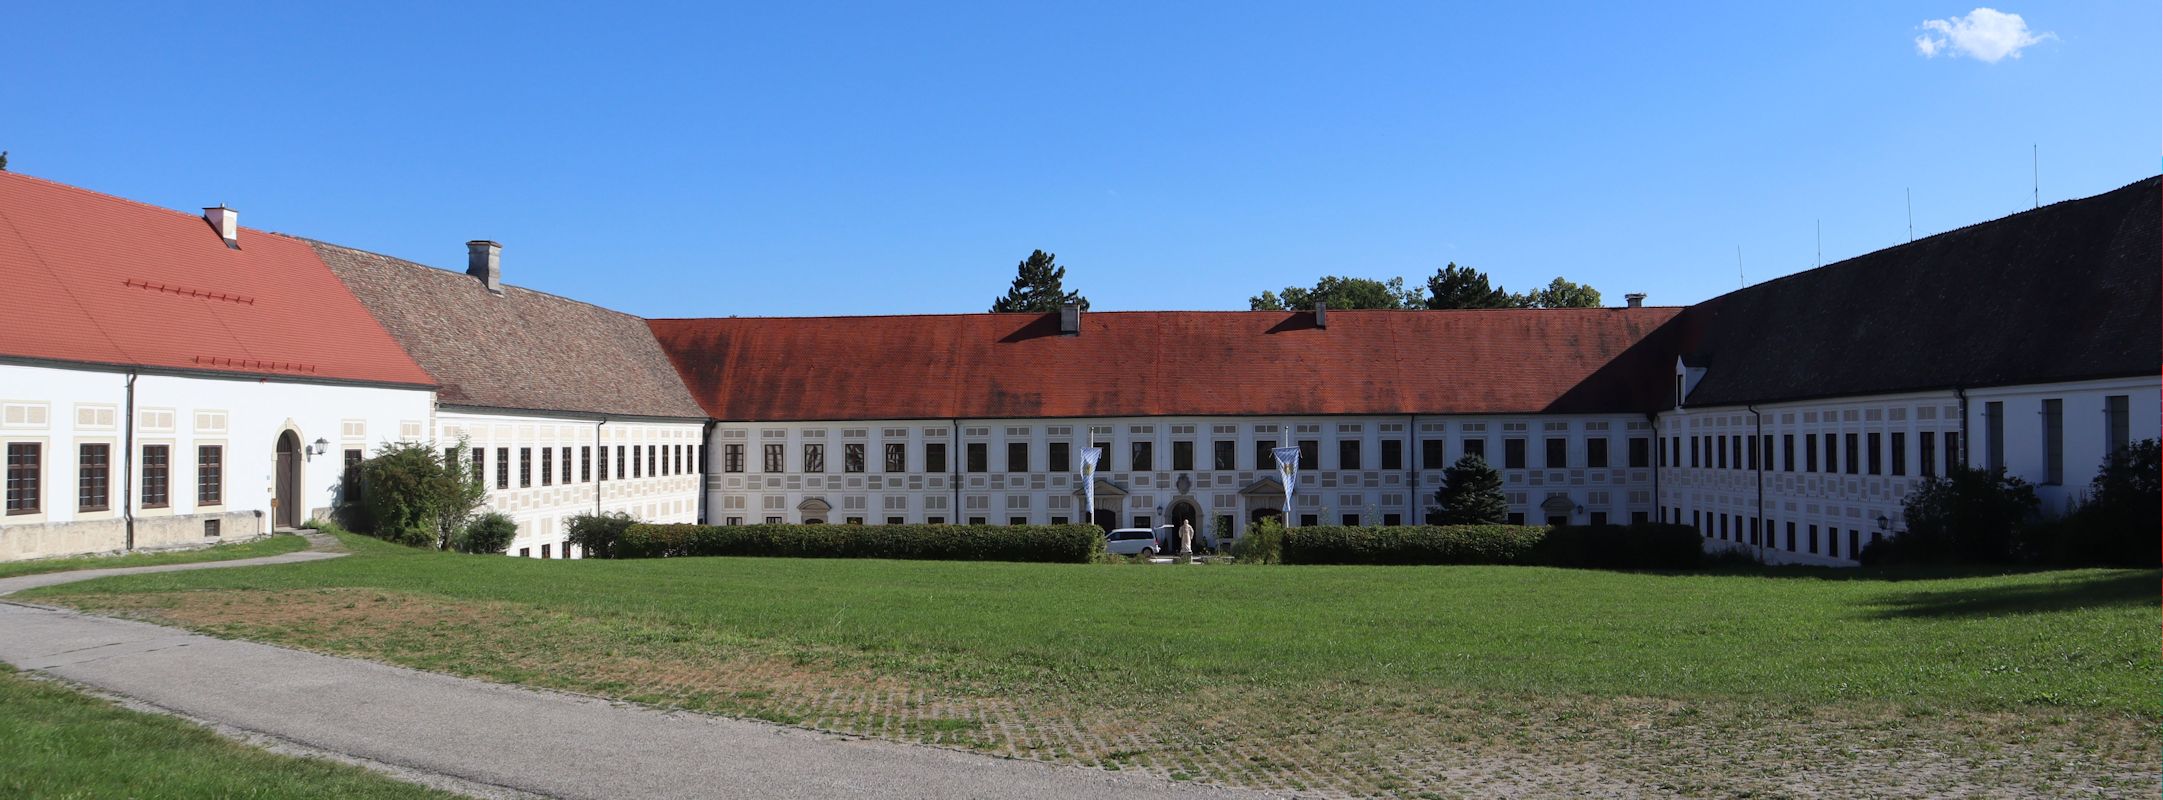 verbliebene Gebäude des Klosters Wessobrunn heute